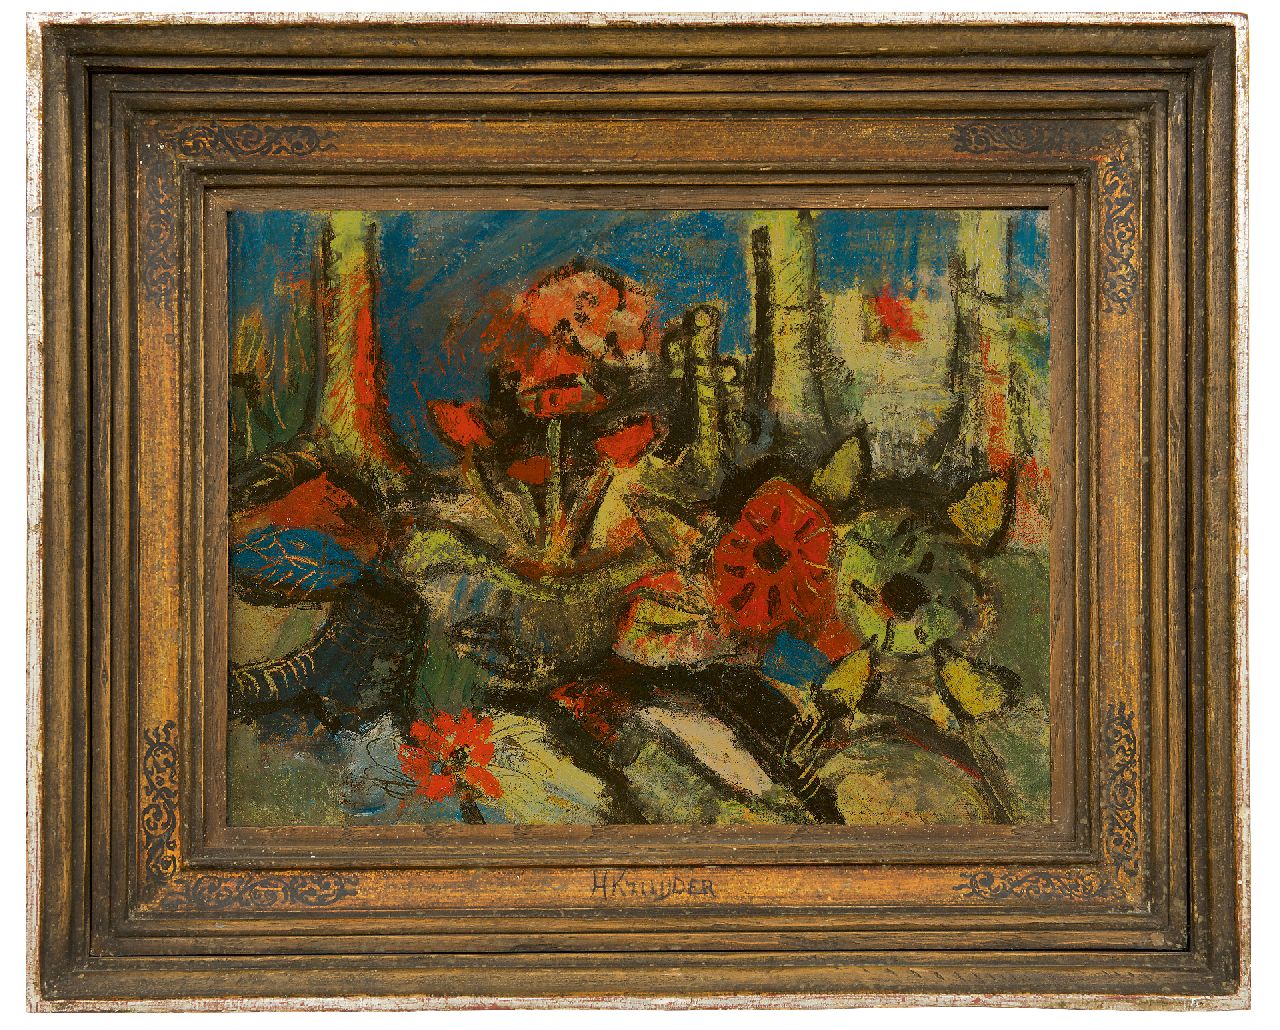 Kruyder H.J.  | 'Herman' Justus Kruyder | Schilderijen te koop aangeboden | Bosbloemen, olieverf op doek 30,7 x 40,4 cm, te dateren ca. 1925